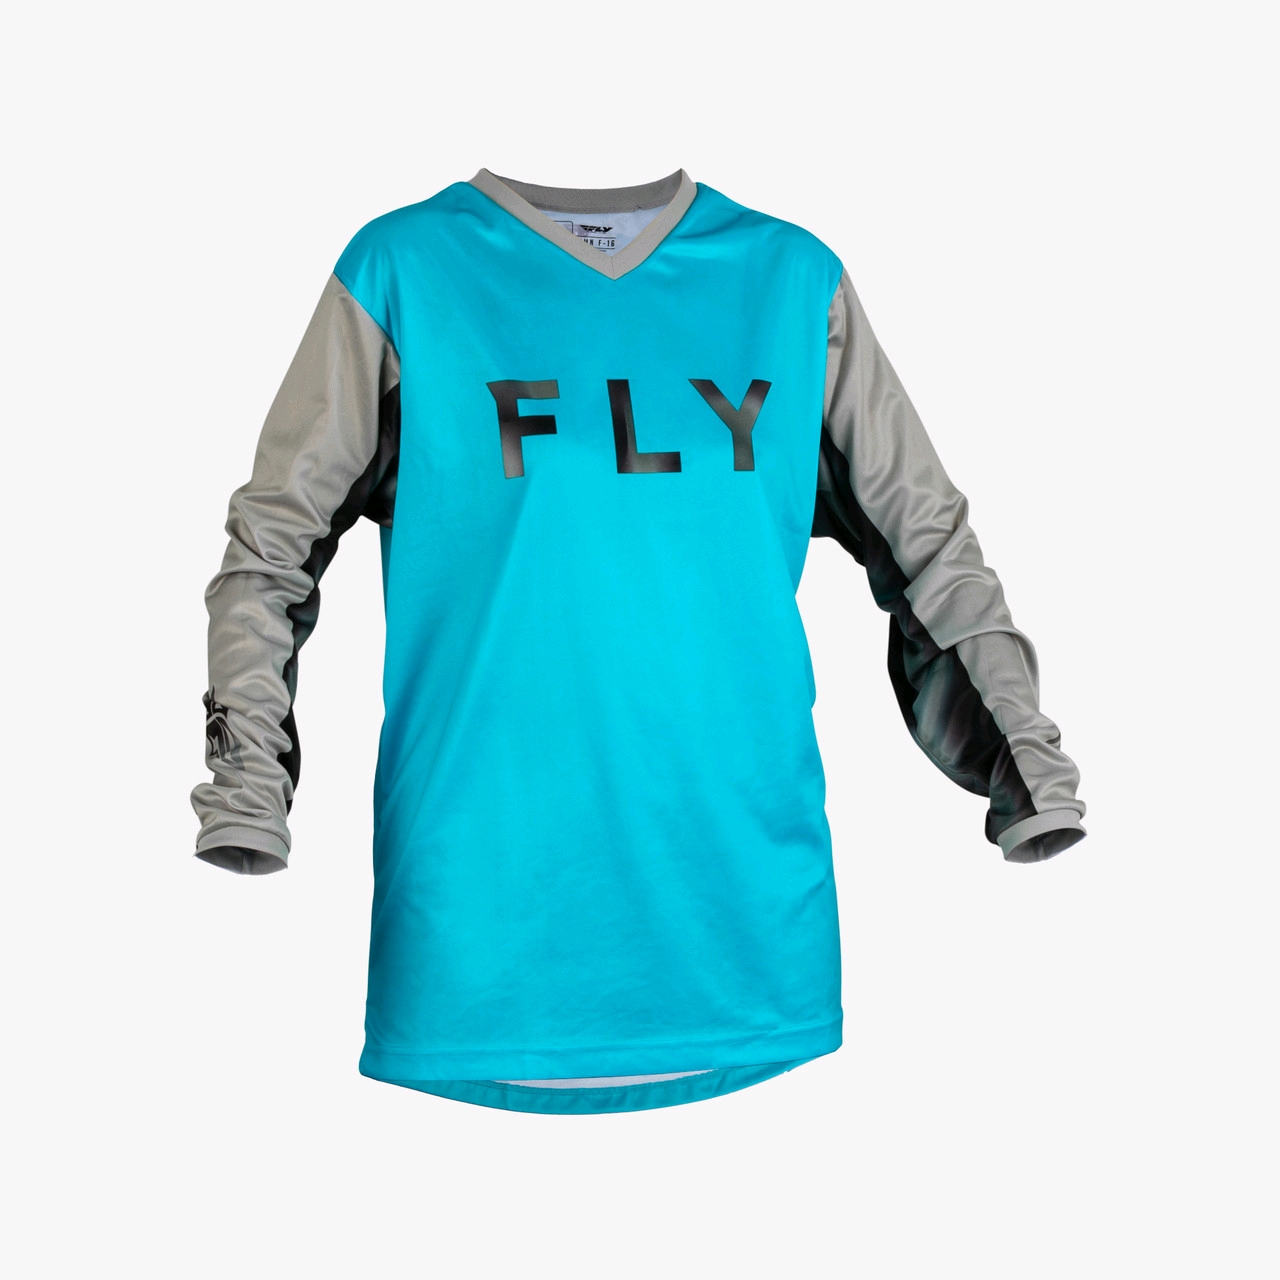 Fly RACING WOMEN'S F-16 (серый/голубой, 3/4, 376-83205) Мотоштаны